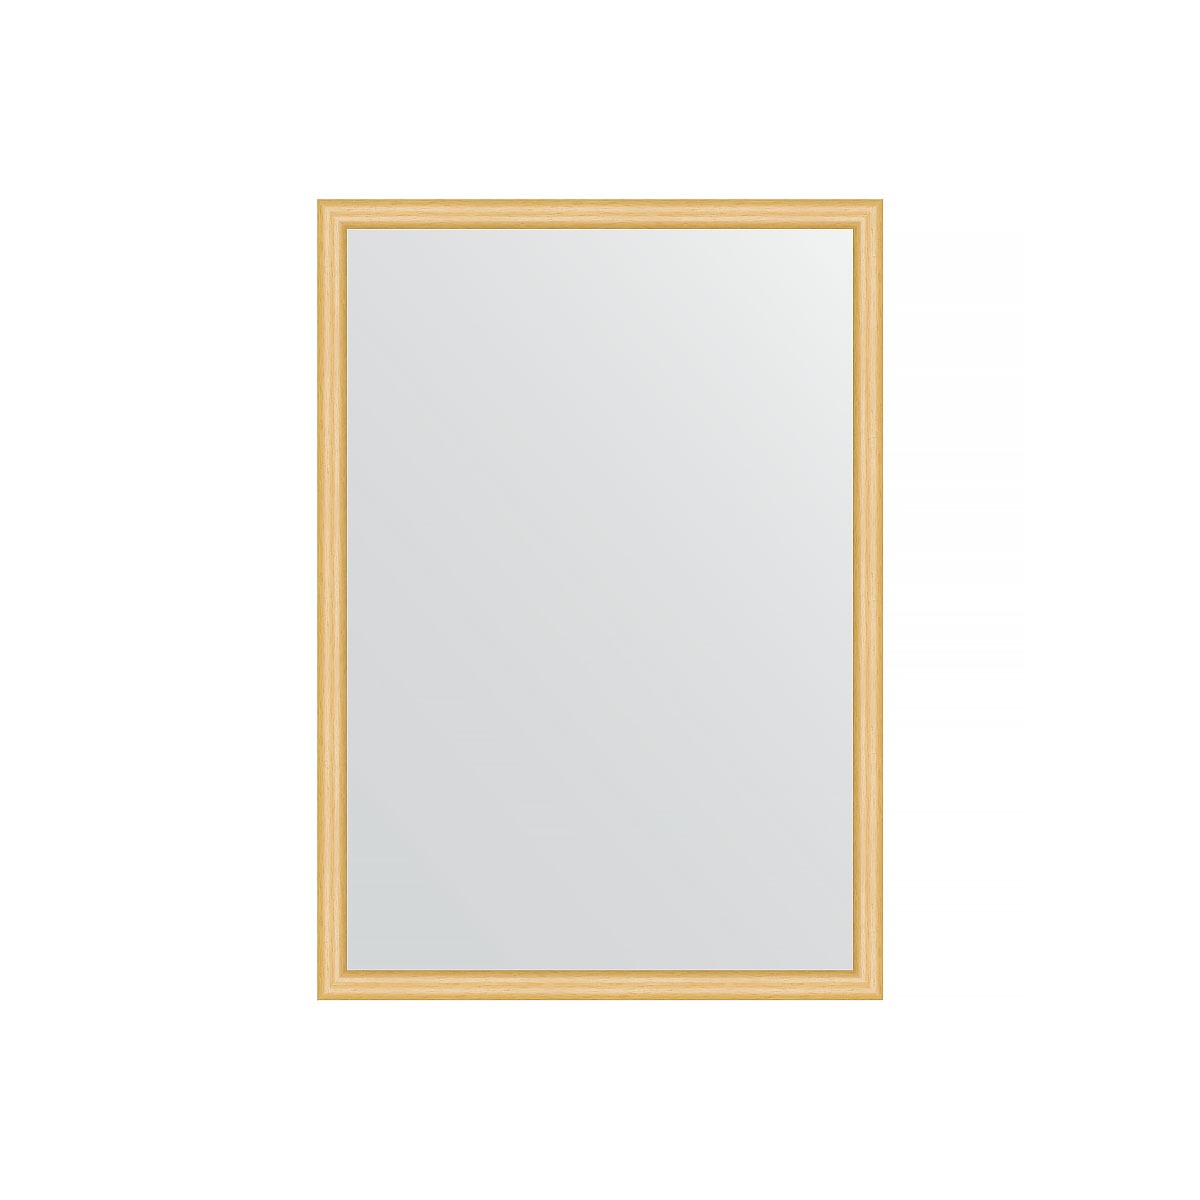 Зеркало в багетной раме Evoform сосна 22 мм 48х68 см зеркало 48х68 см сосна evoform definite by 0618